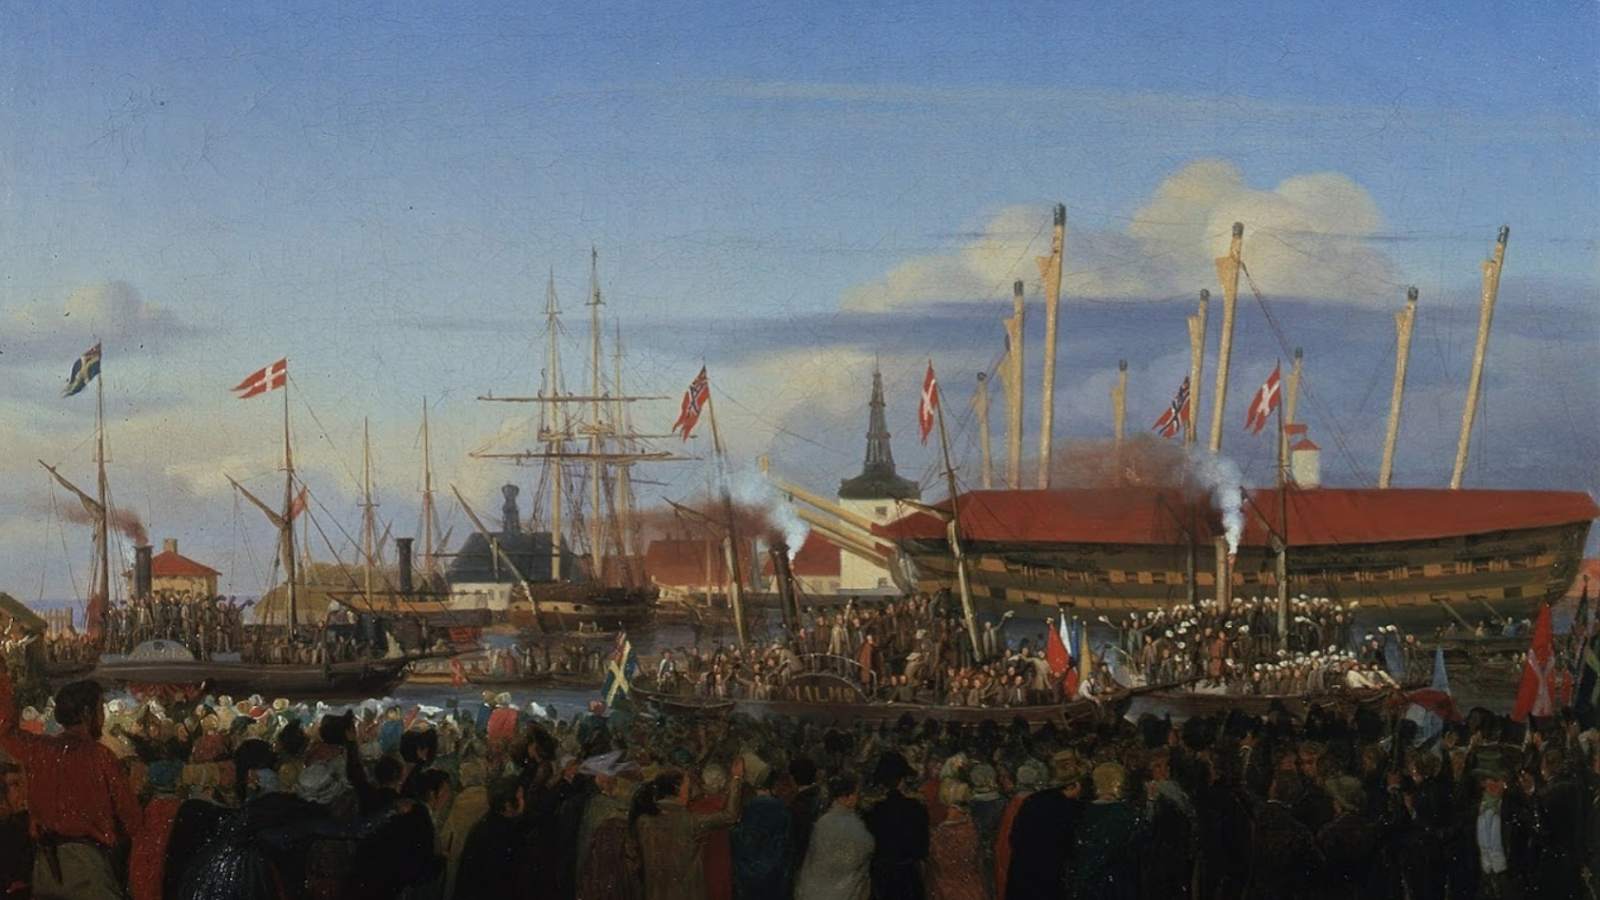 skandinavien union eller undergang skandinavisme glenthøj 1864 revolution